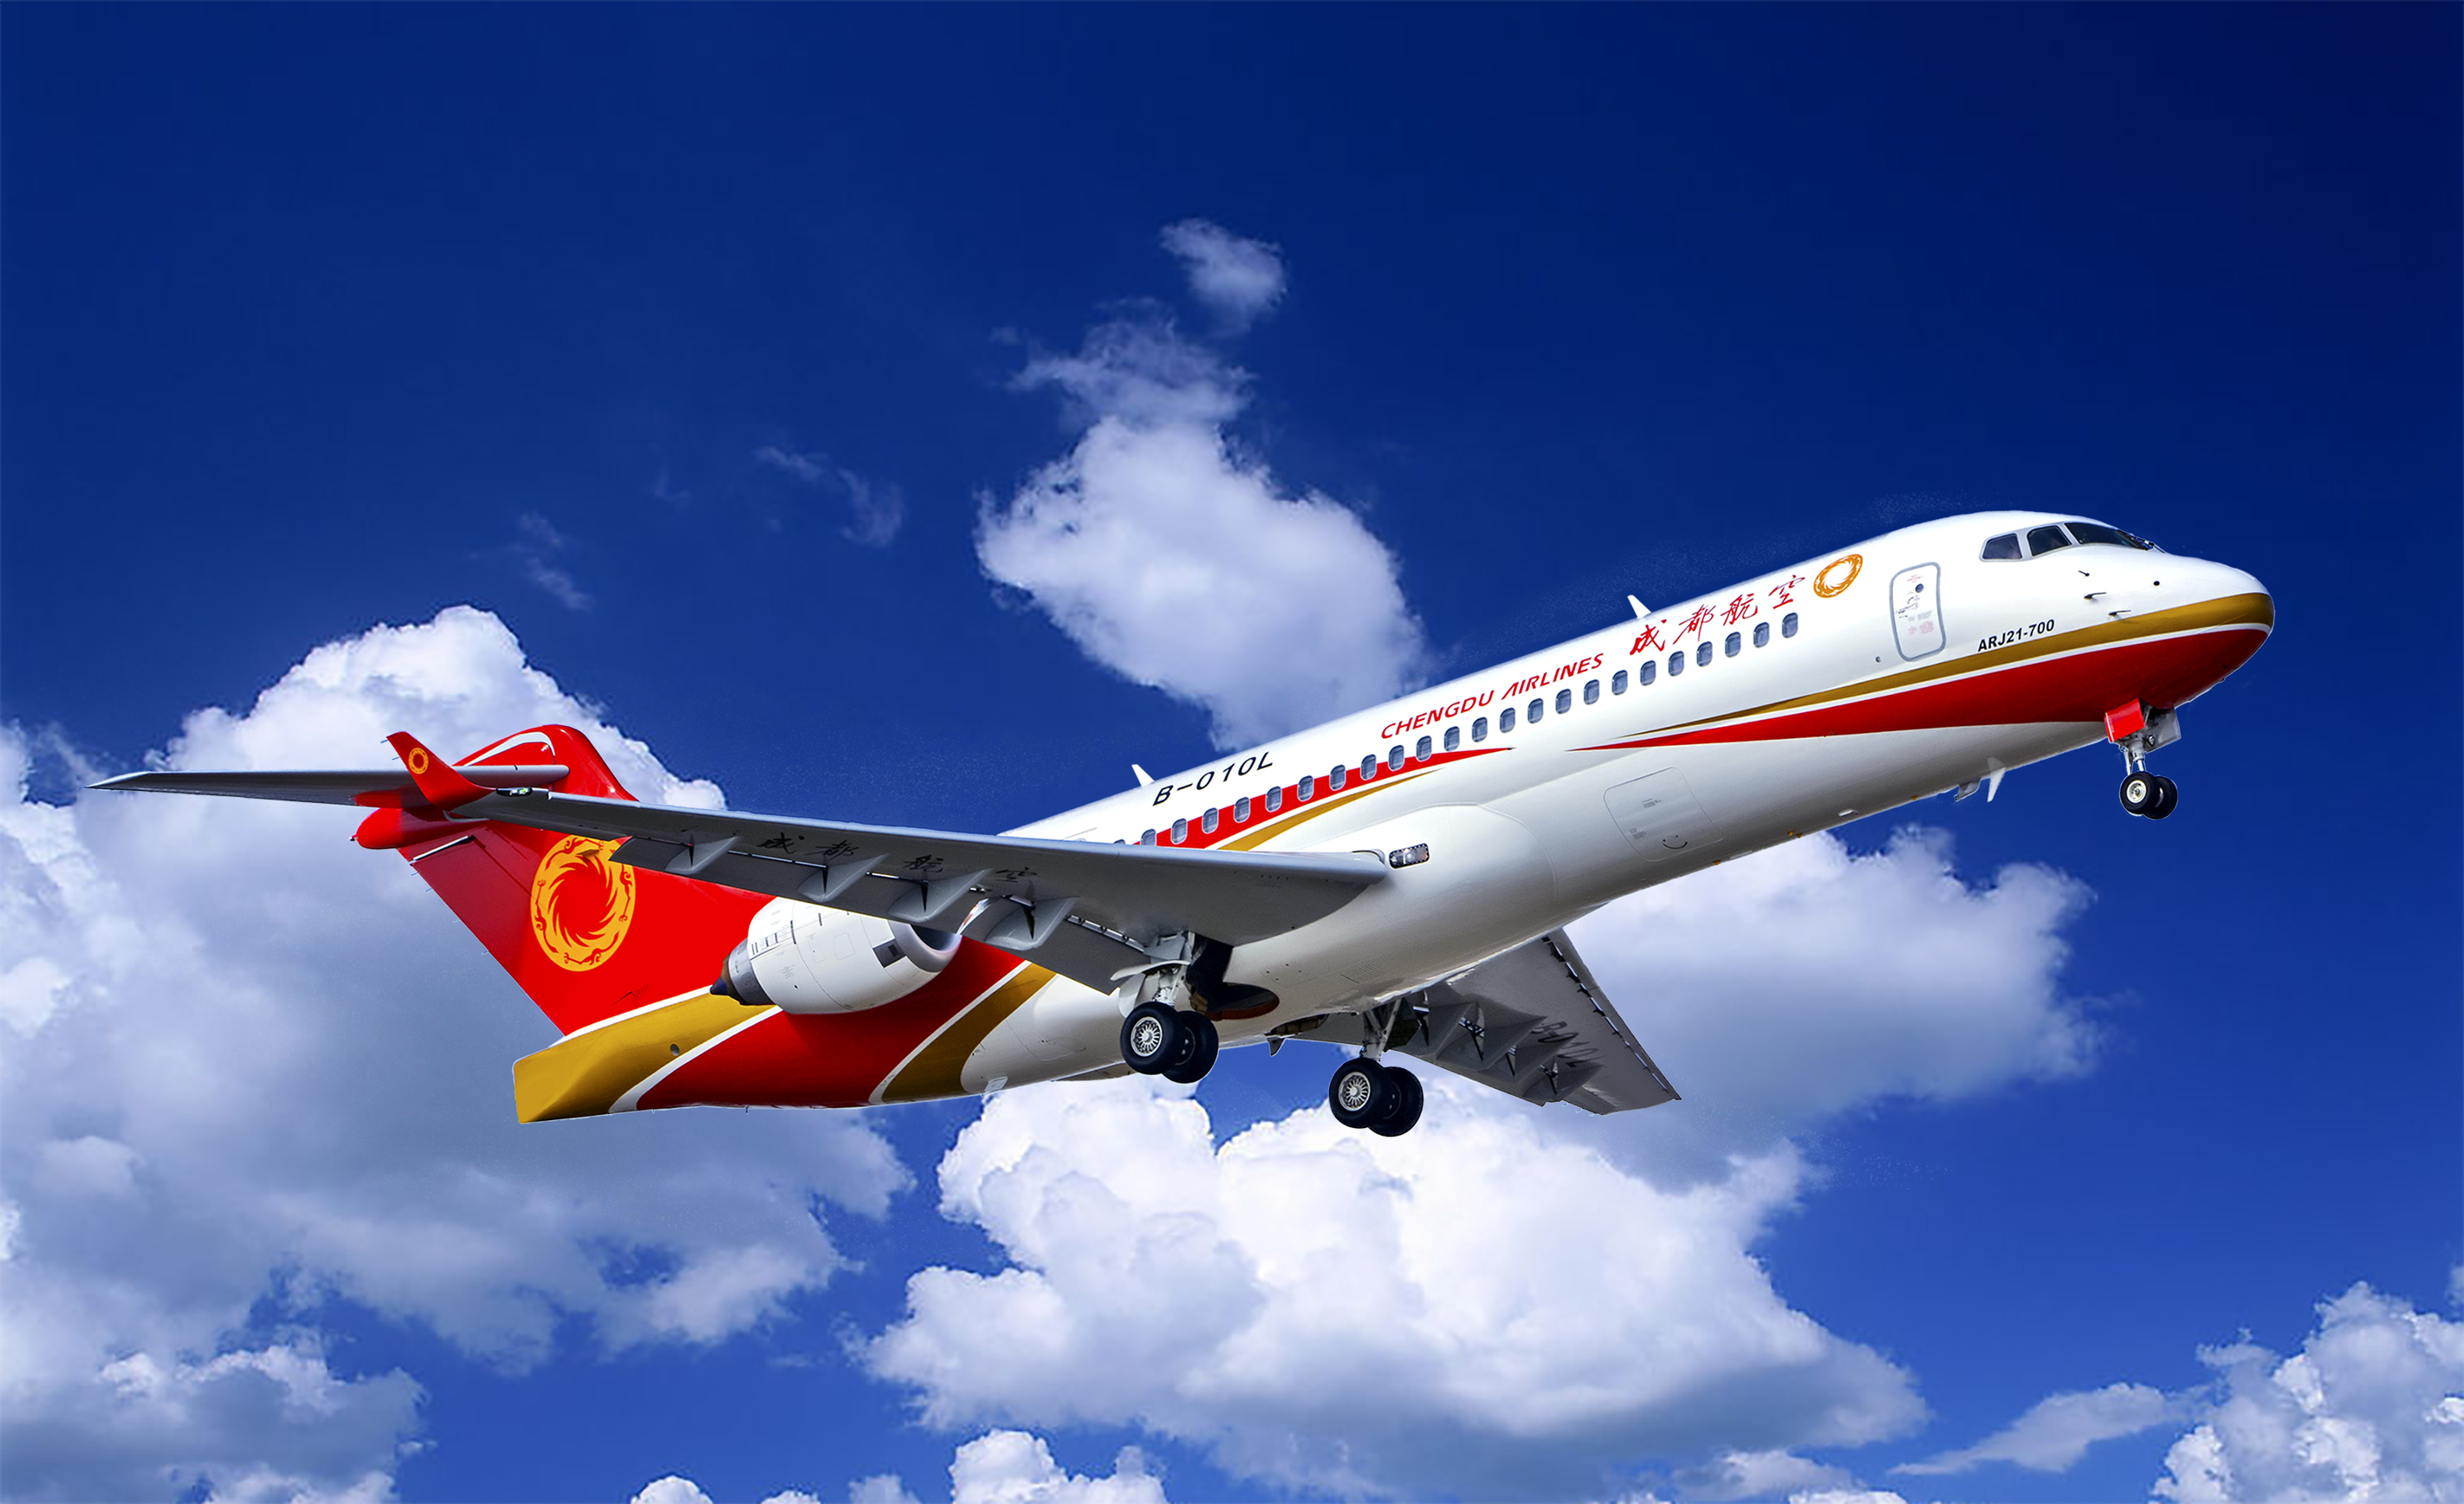 热烈祝贺中国南方航空首架B787-9飞机交付！